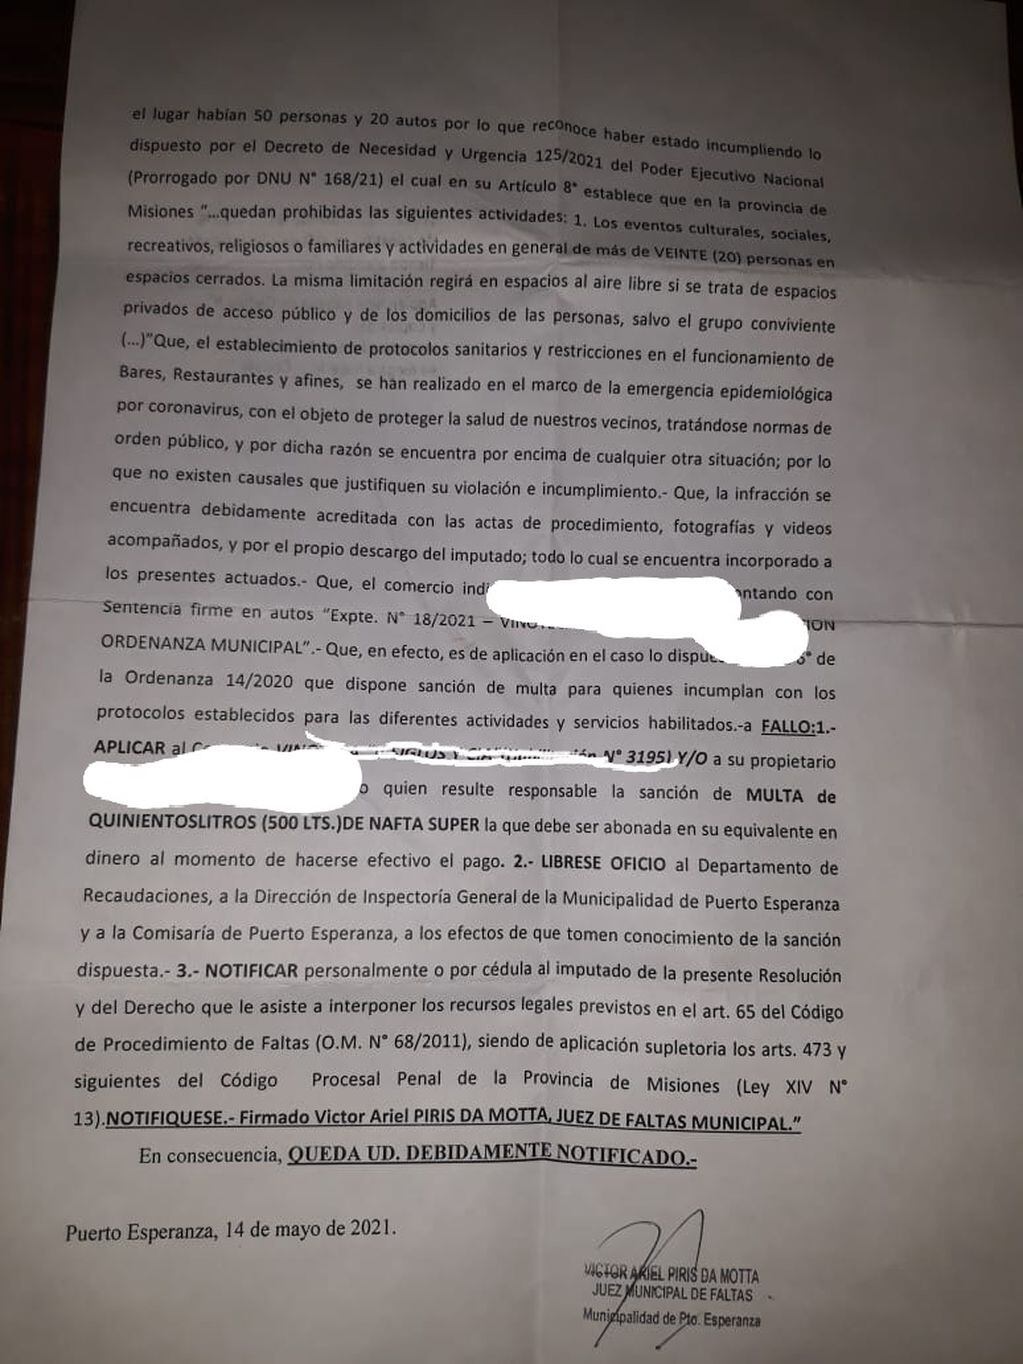 Acta elaborado por el Tribunal de Falta de Puerto Esperanza.